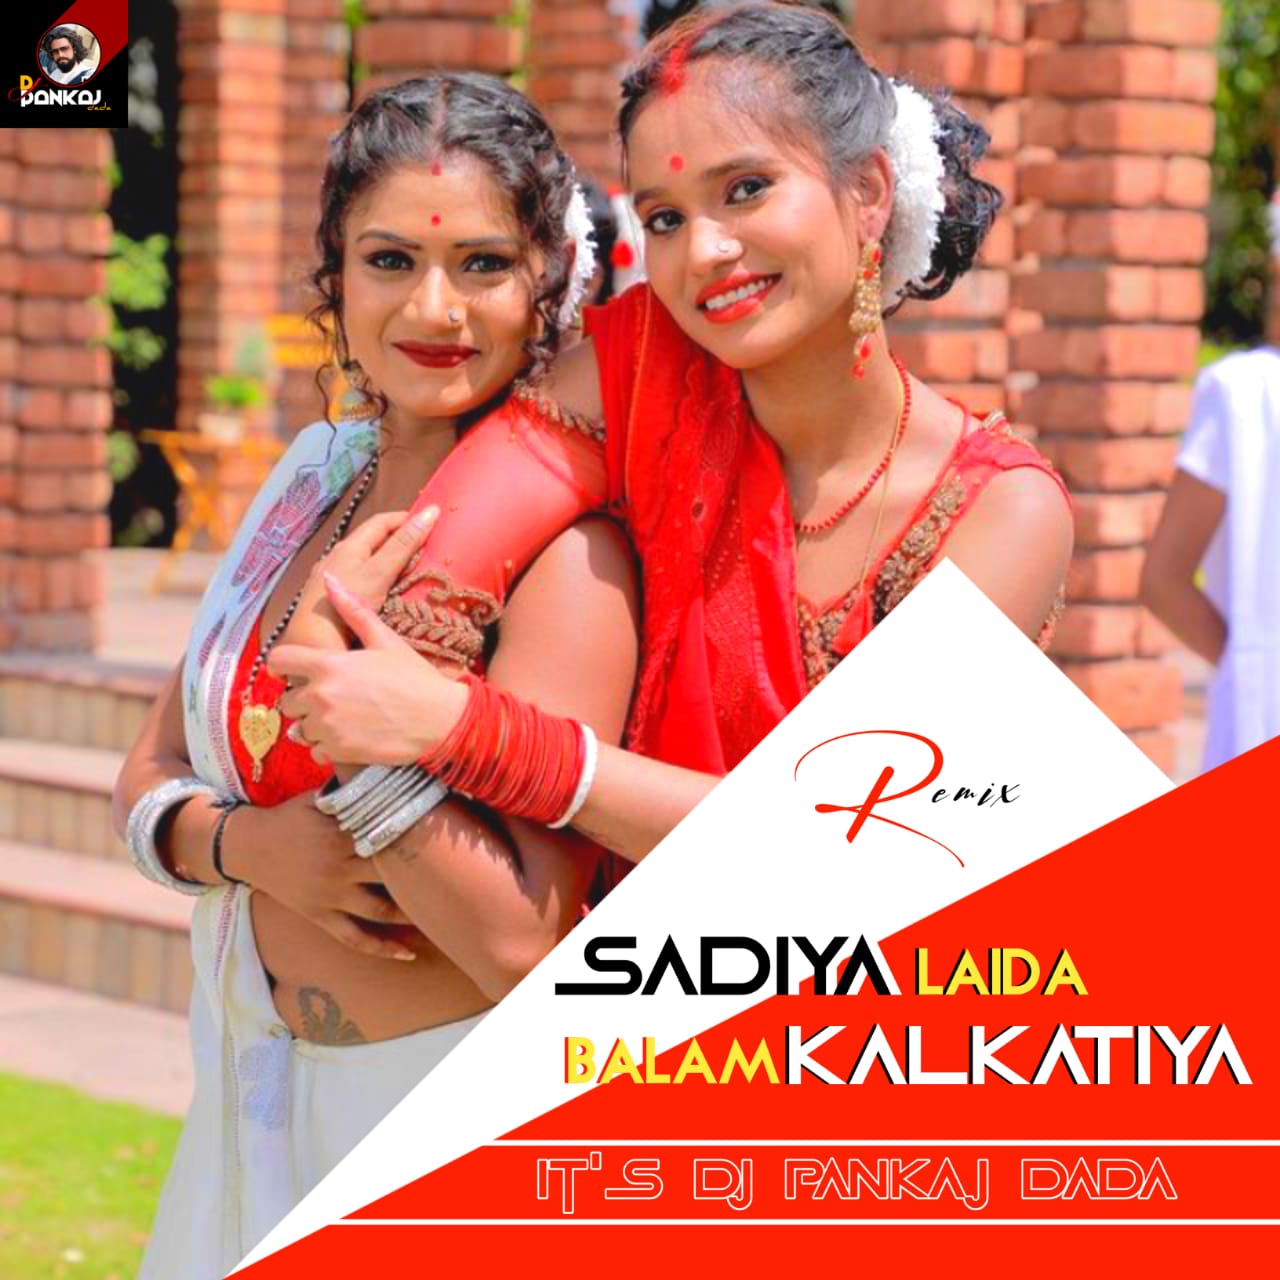 Sadiya Laida Balam Kalkatiya - Samar Singh, ShilpiRaj (Gms Jhankar Dance Remix) - Dj Pankaj Dada Tanda